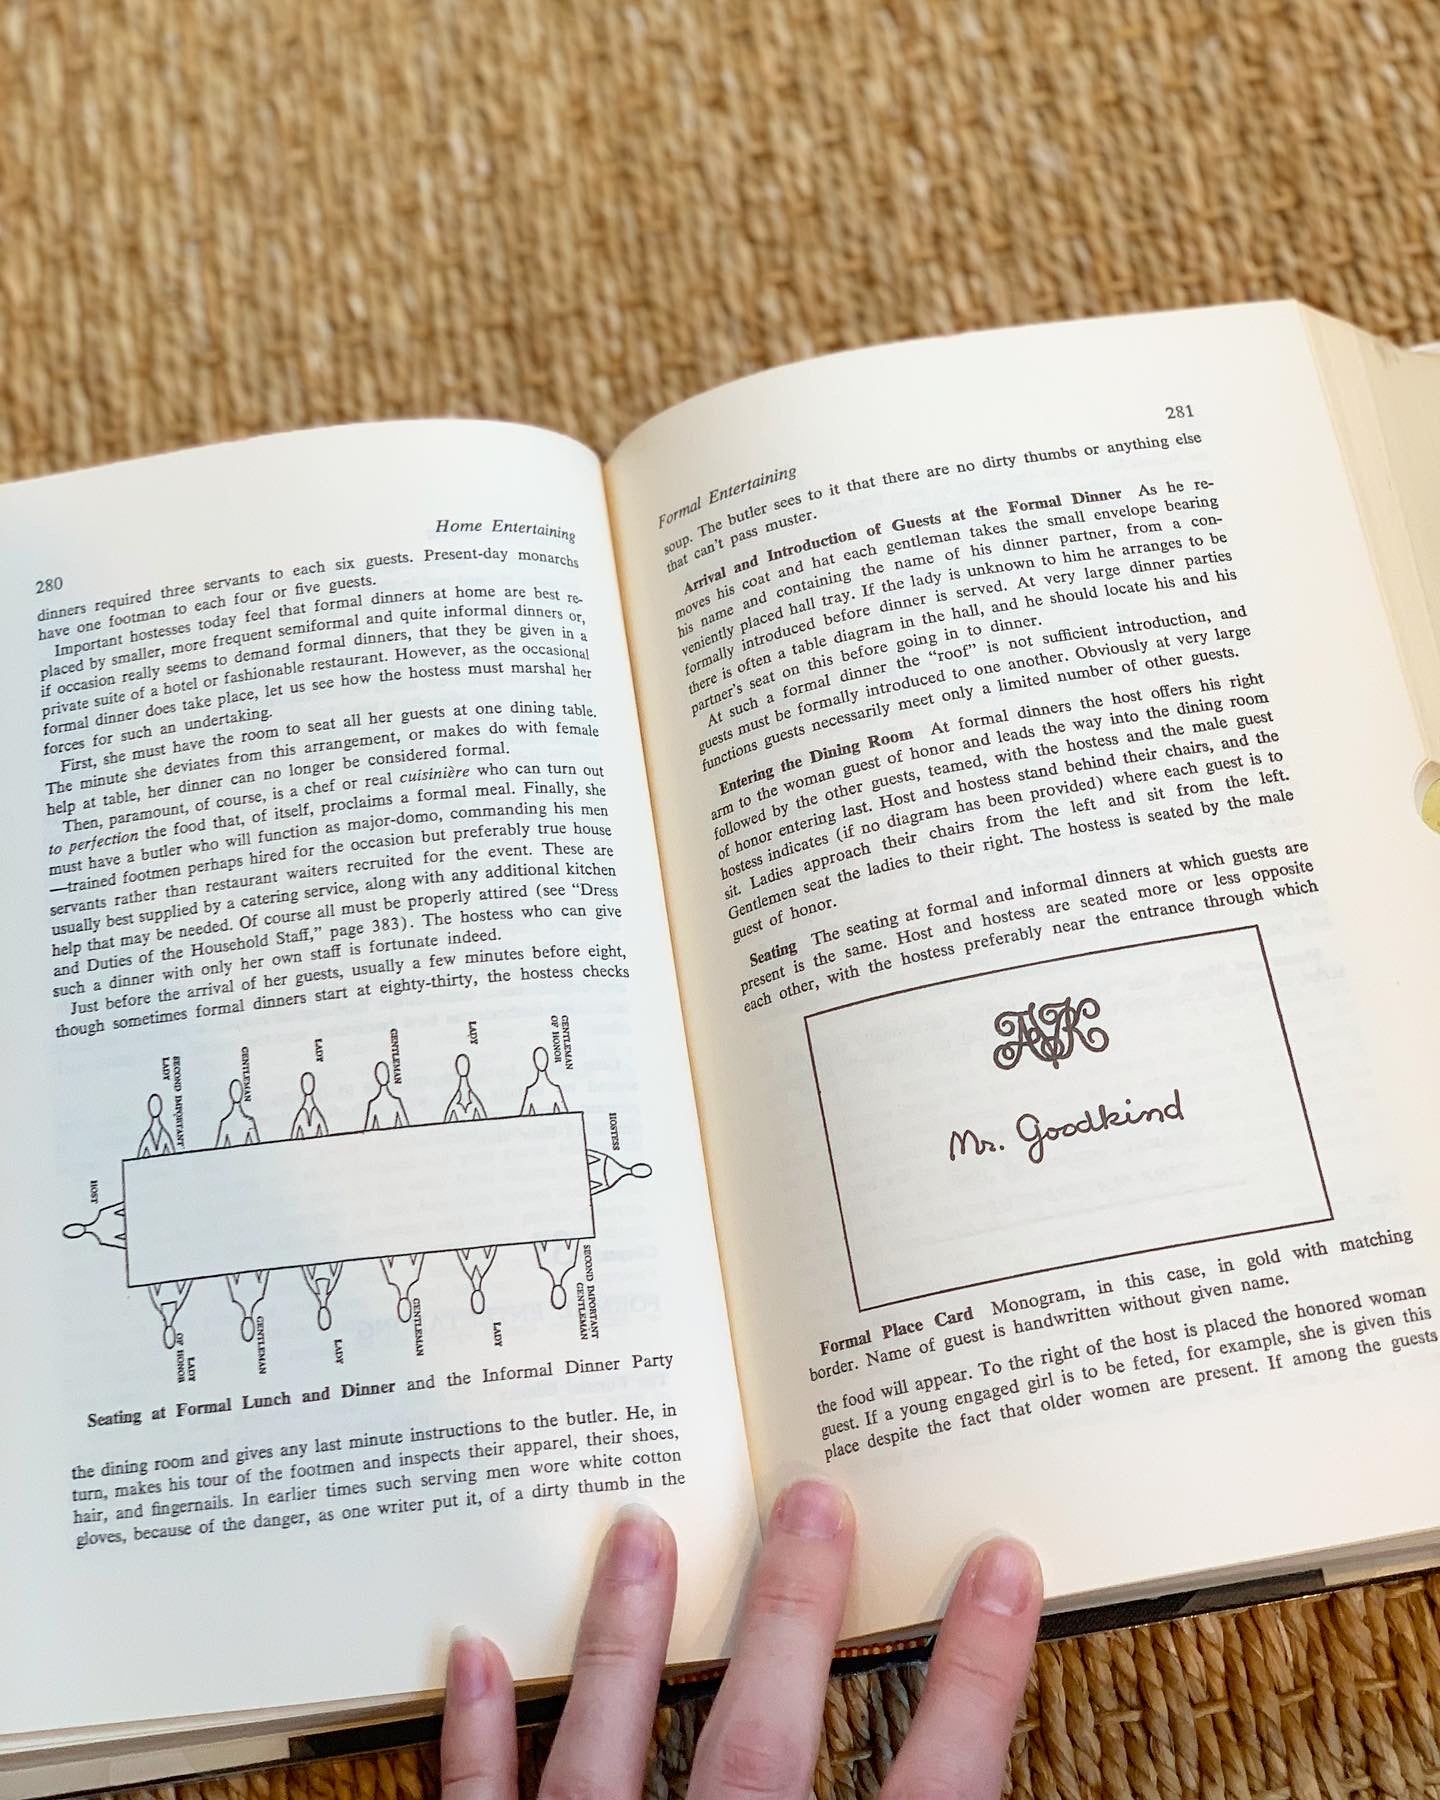 Amy Vanderbilt's New Complete Book of Etiquette (1967)